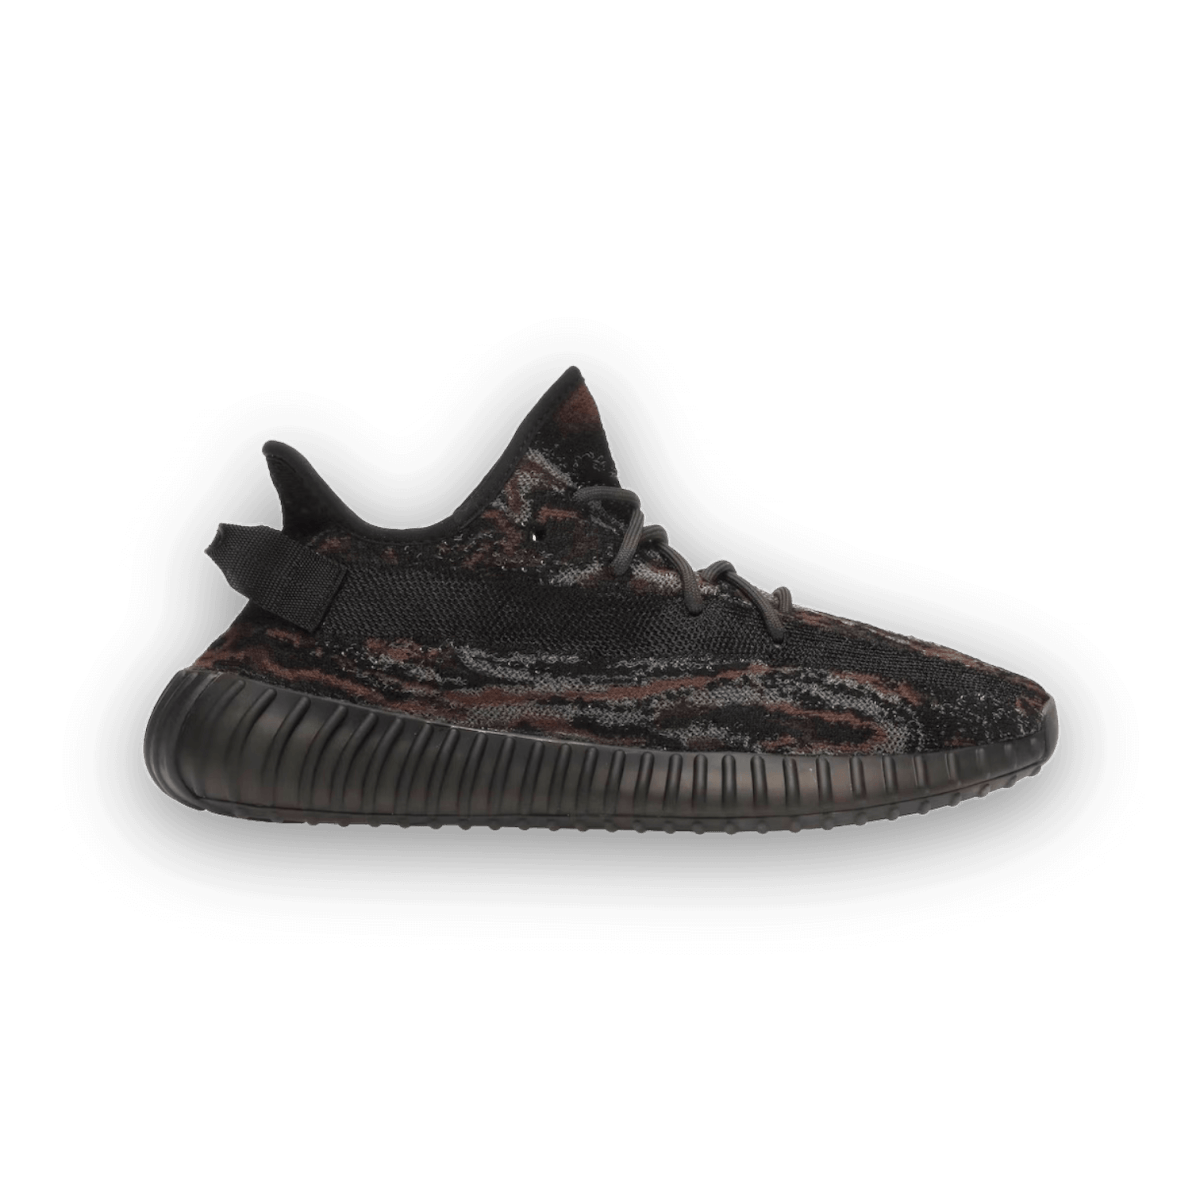 Yeezy Boost 350 V2 MX Rock - Low Sneaker - Jawns on Fire Sneakers & Streetwear